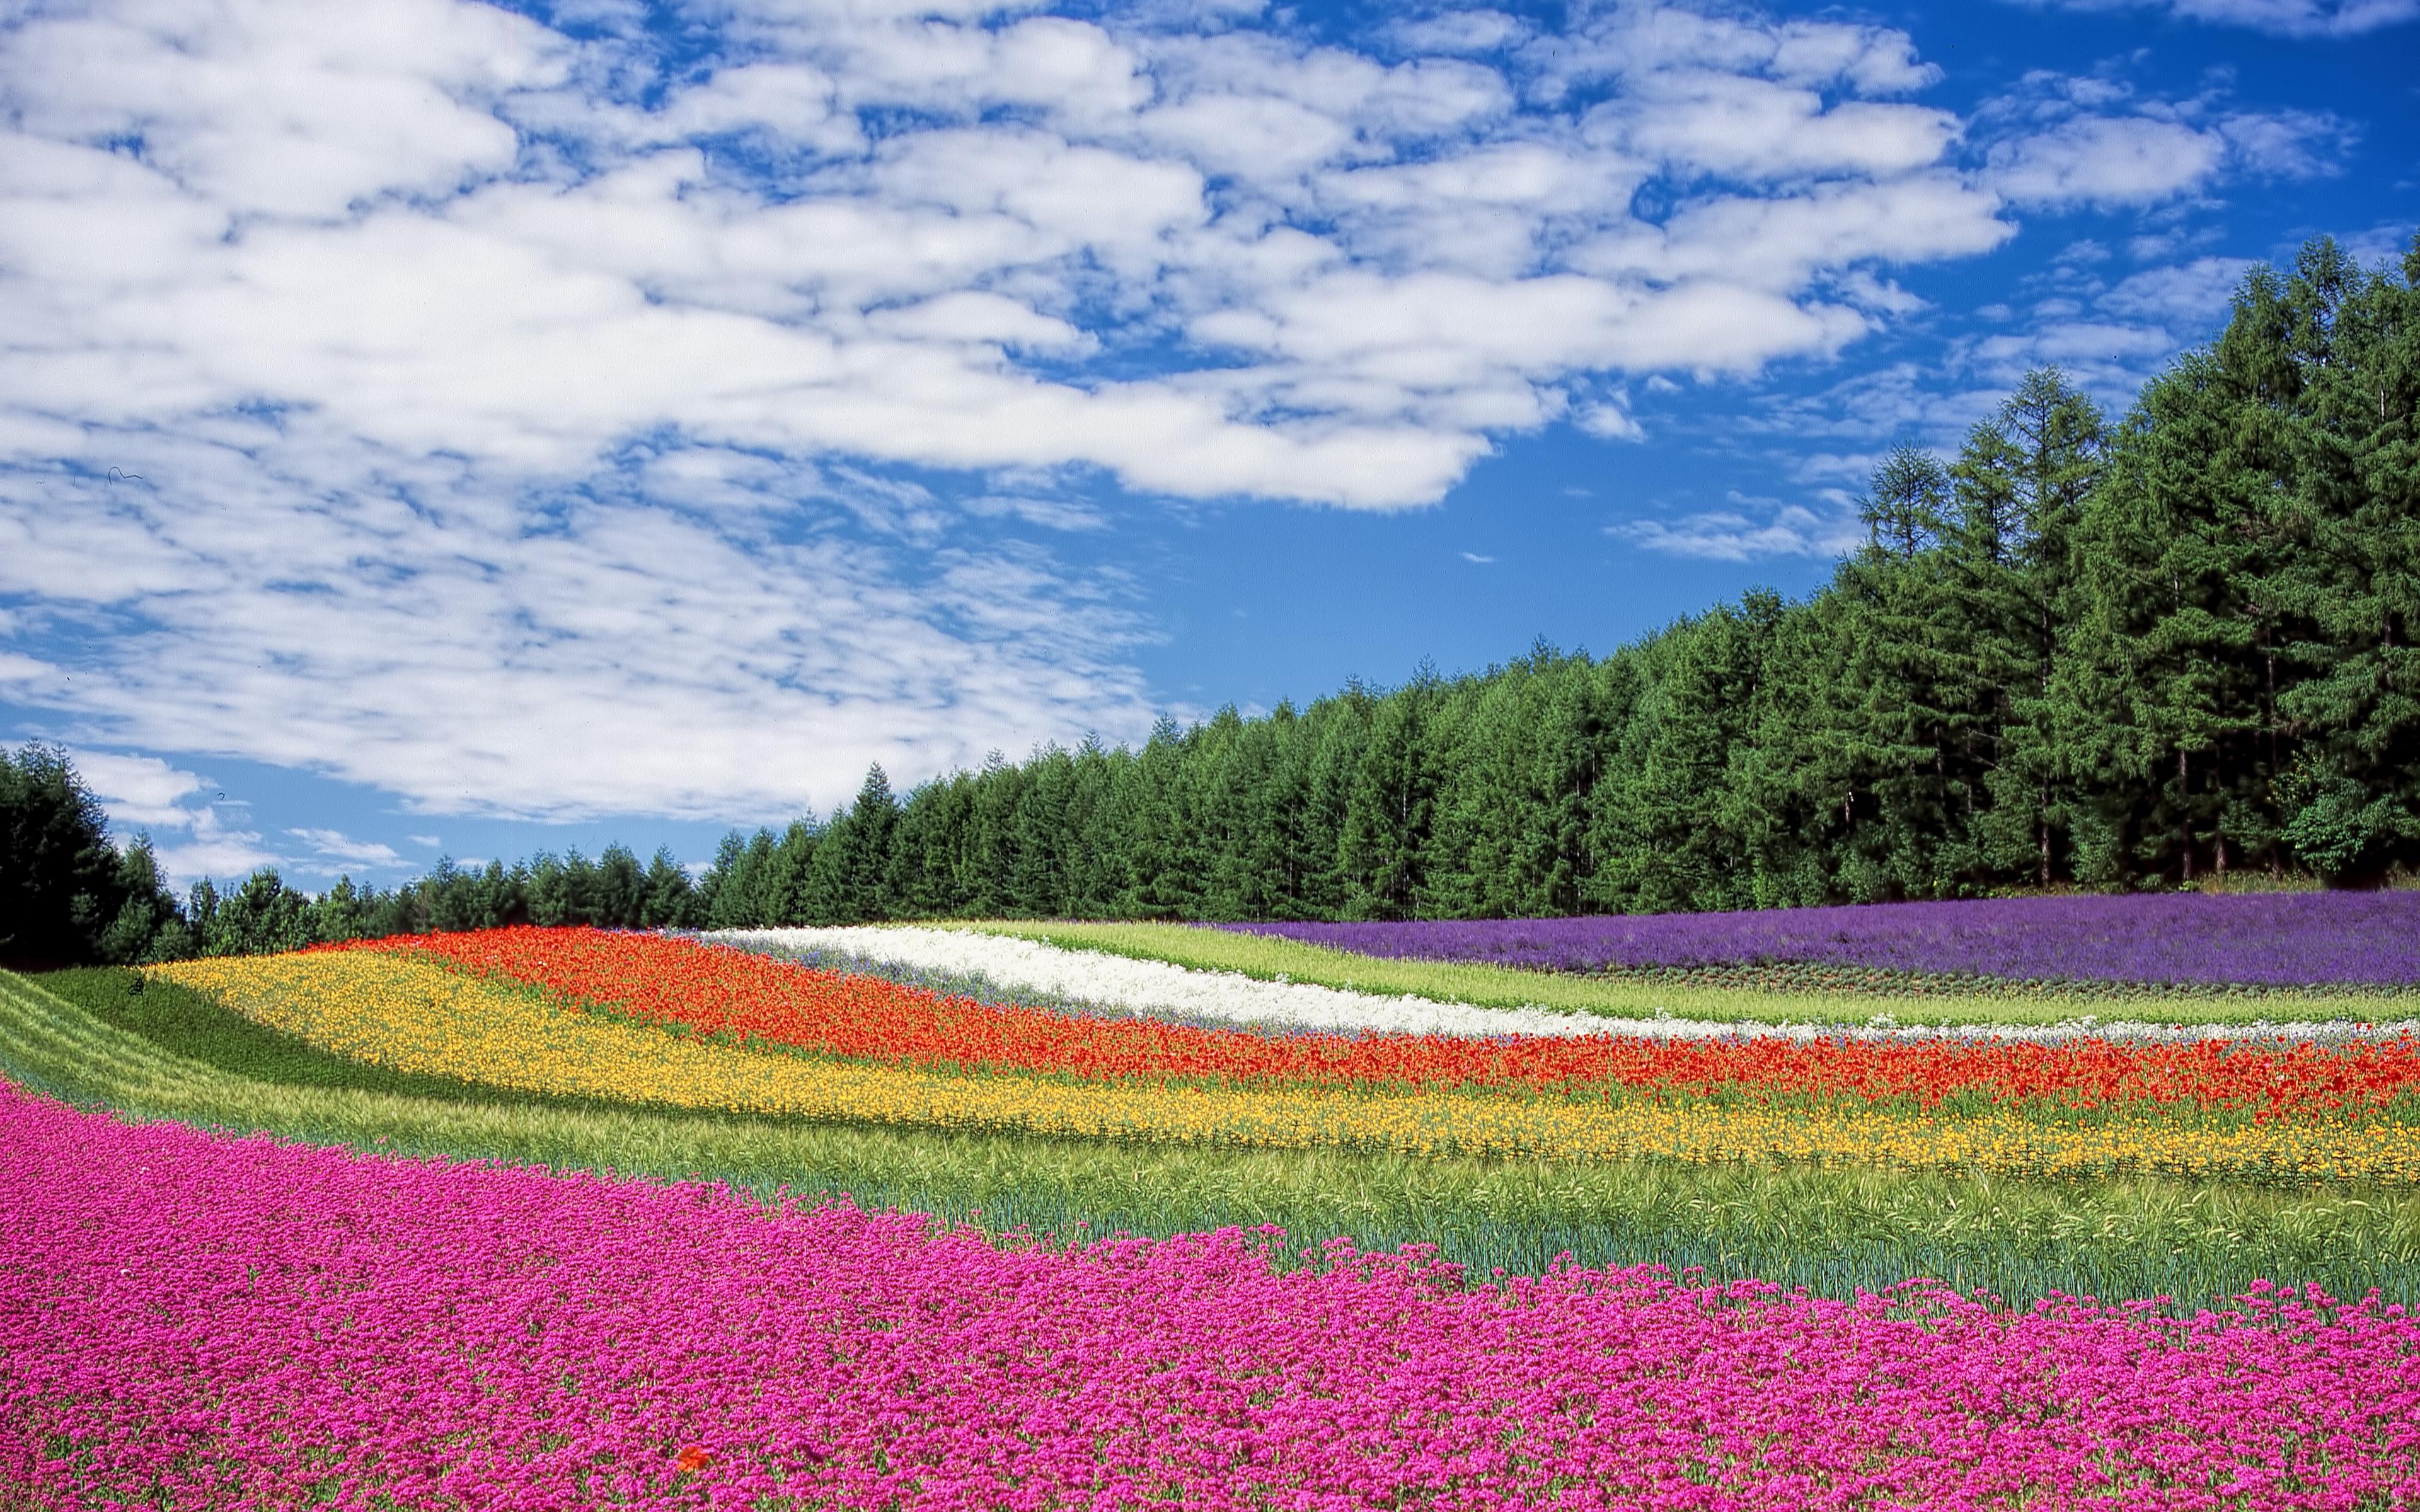 Download wallpaper 3840x2400 hokkaido, japan, flowers, field